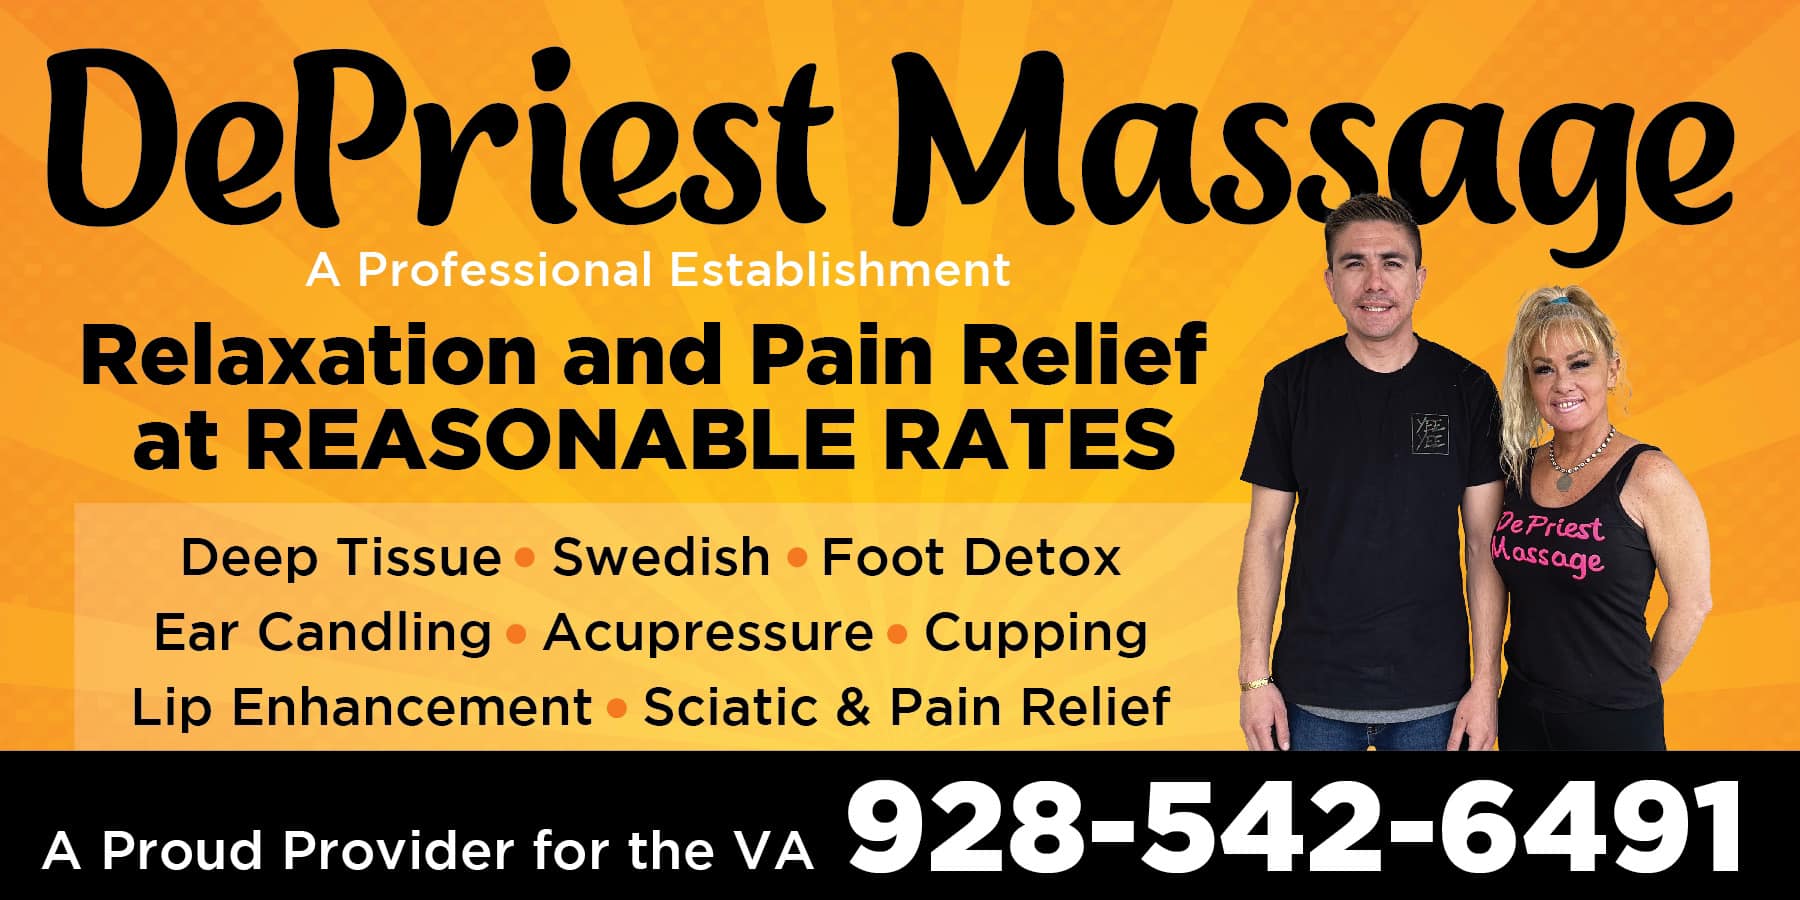 DePriest Massage 4508 AZ-95 Suite E, Fort Mohave Arizona 86426